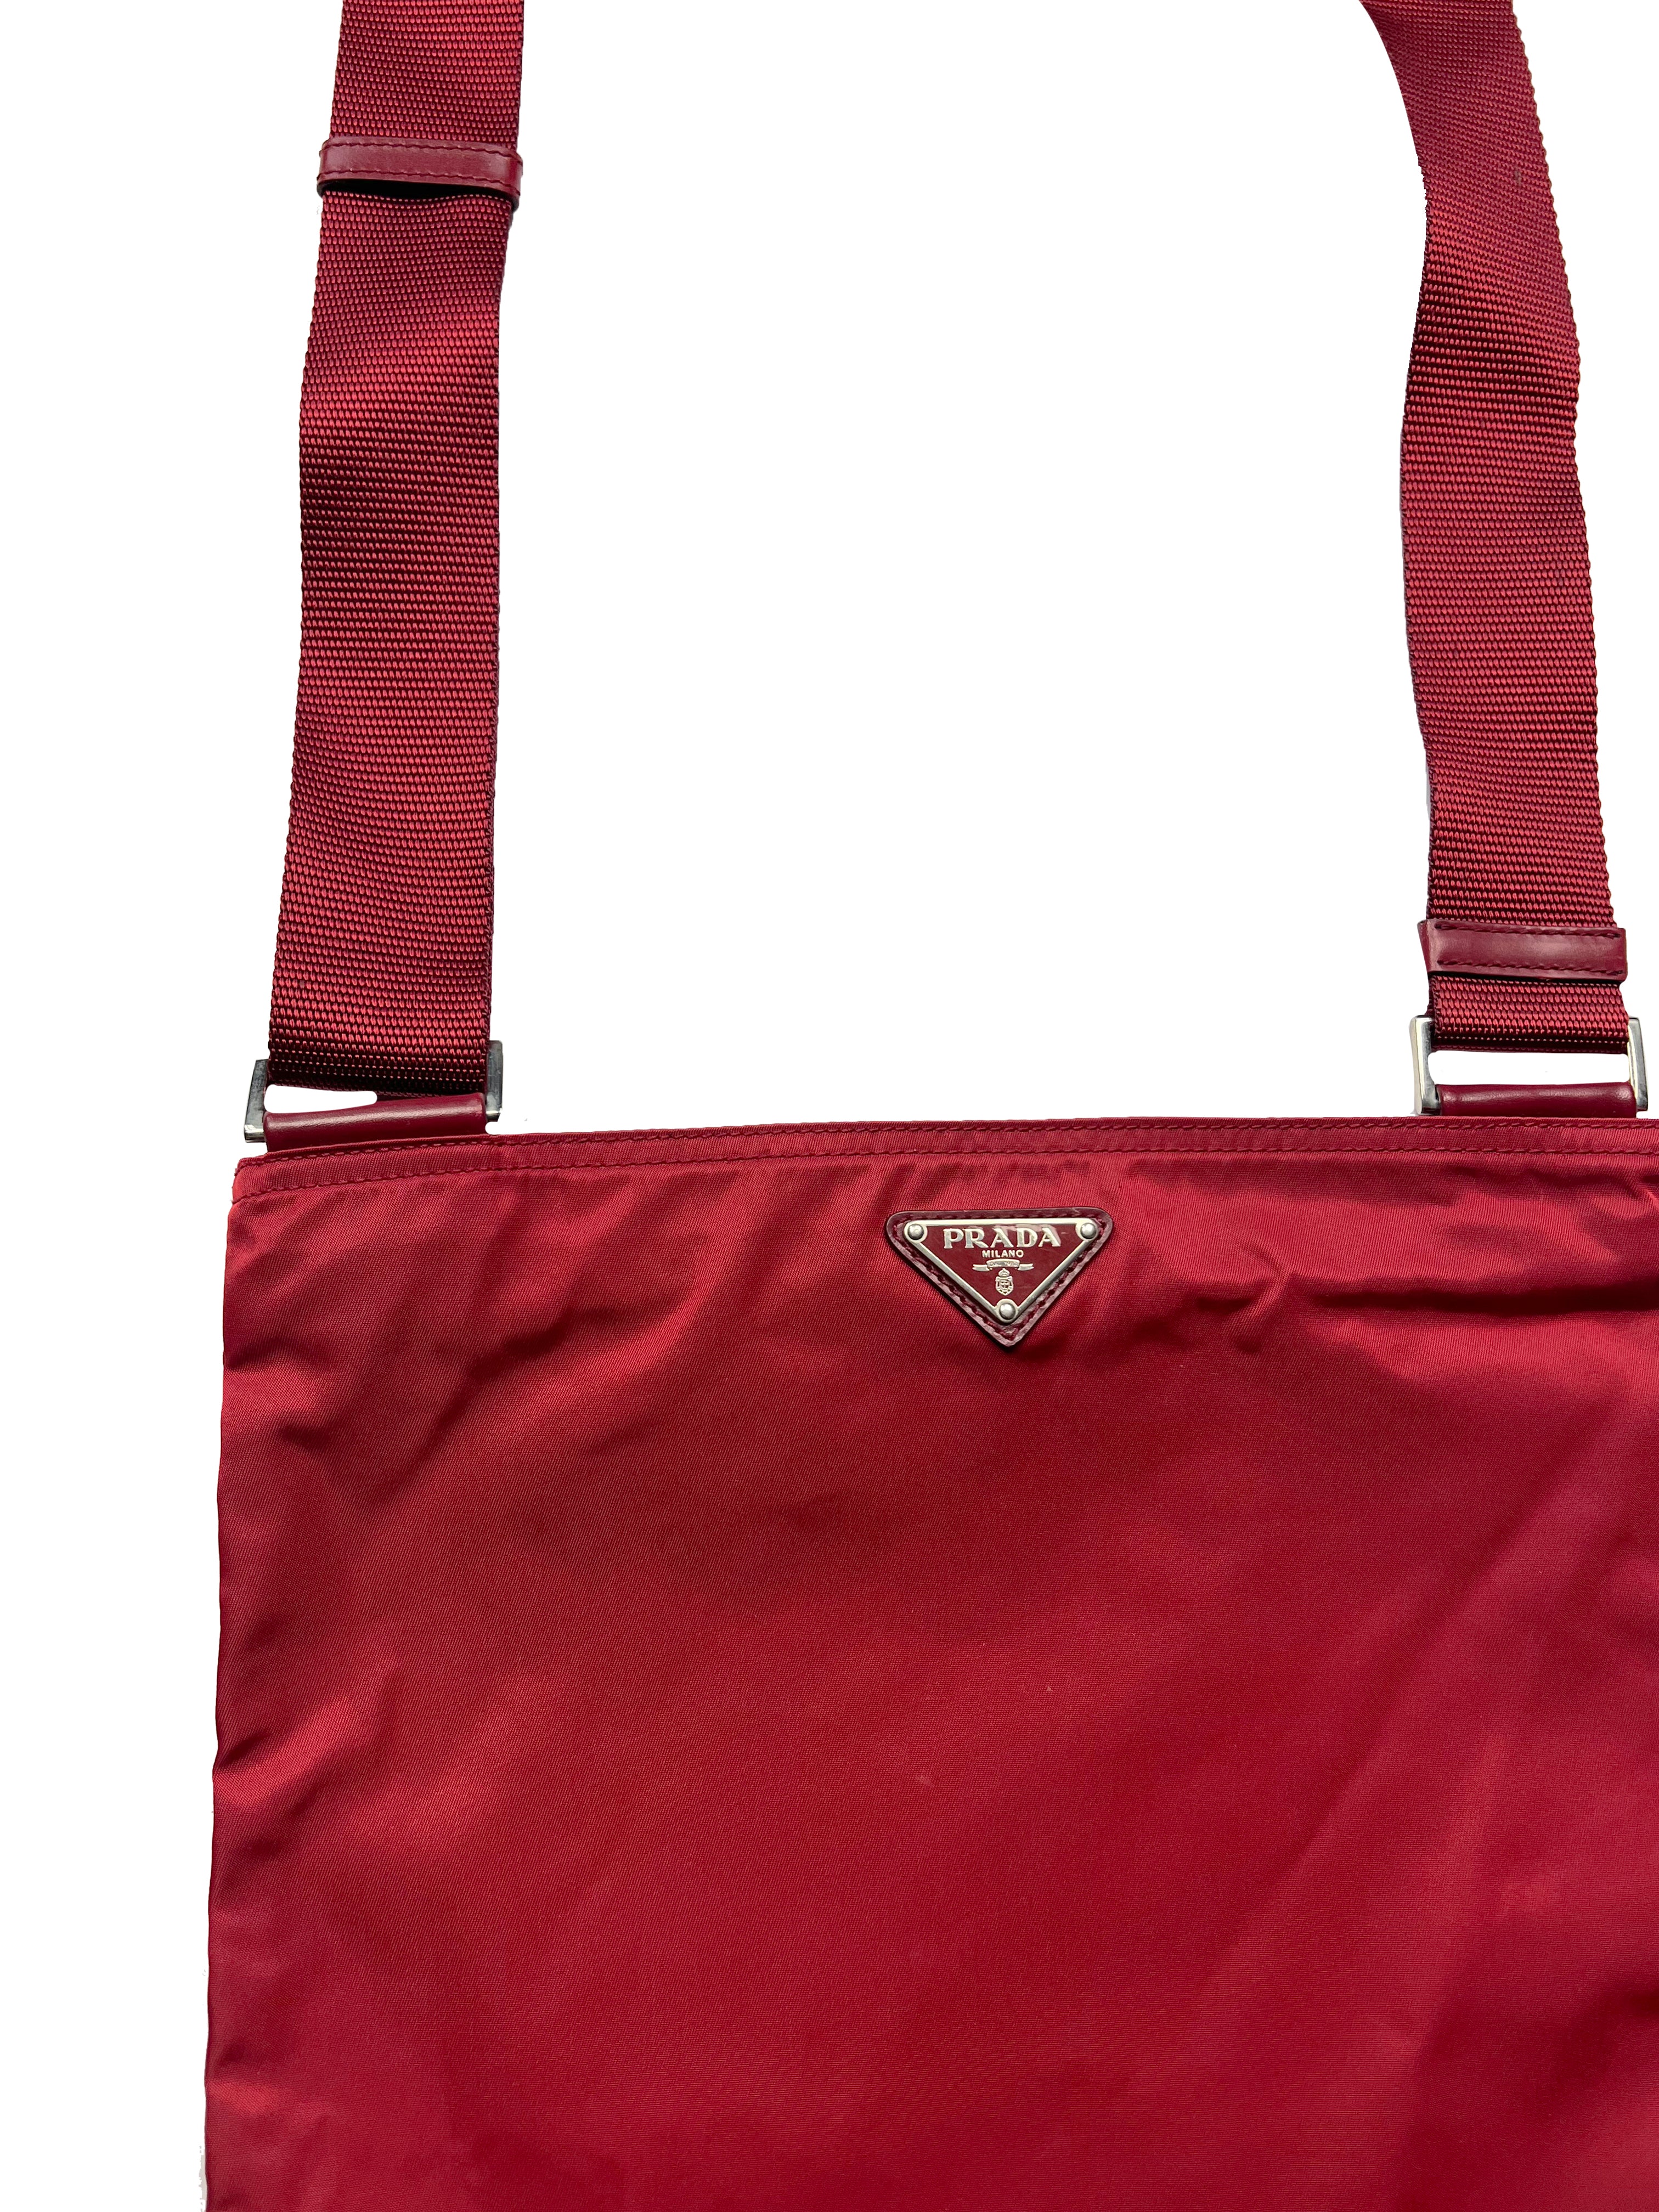 Prada Milano Red Side Bag 00's